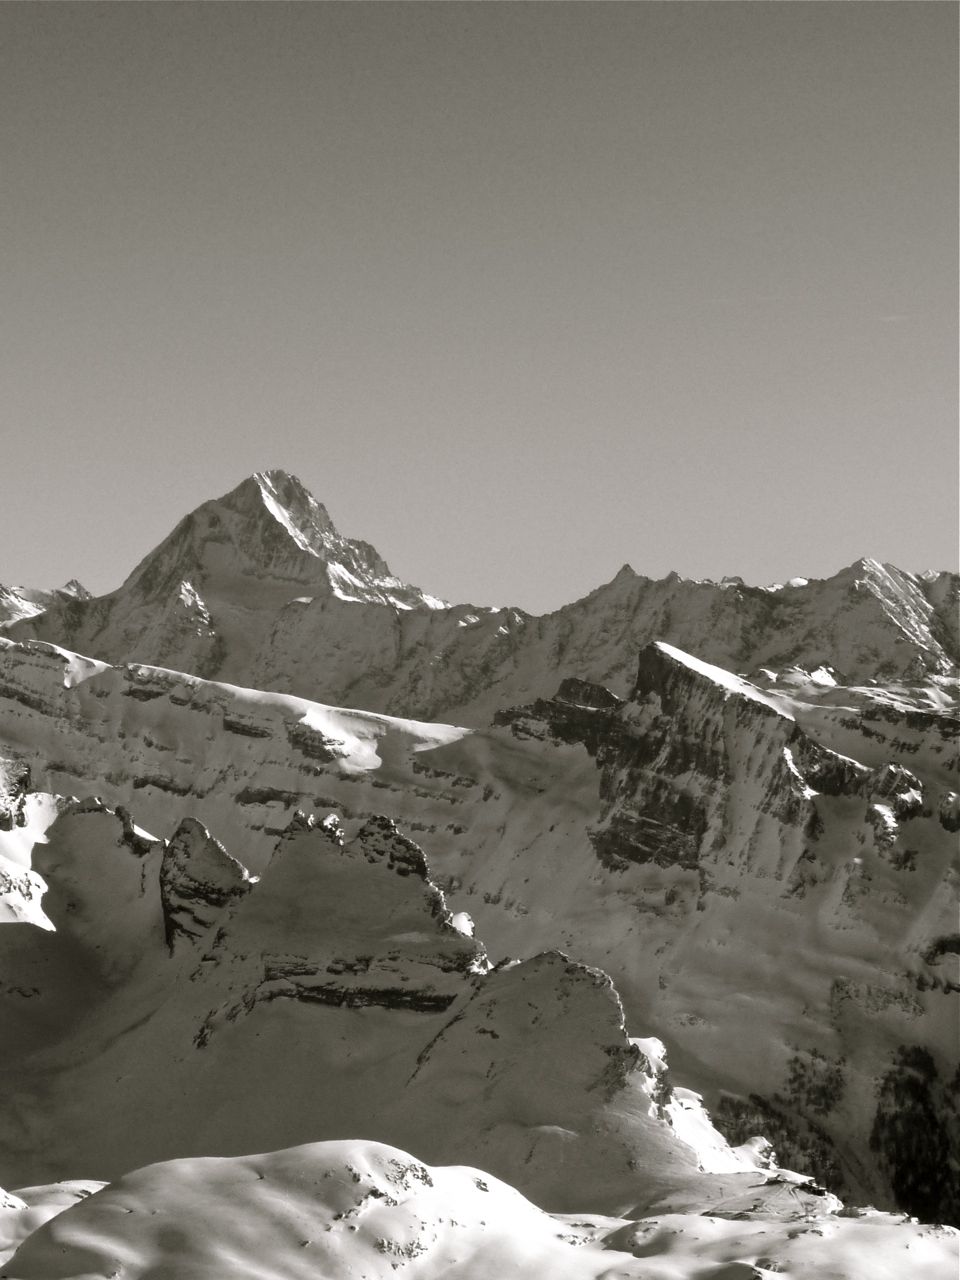 Vue sur le Bietschhorn : celui-là c'est vraiment la bête : quasi 4000m, que du raidasse.
La Gemmi au bas de l'image